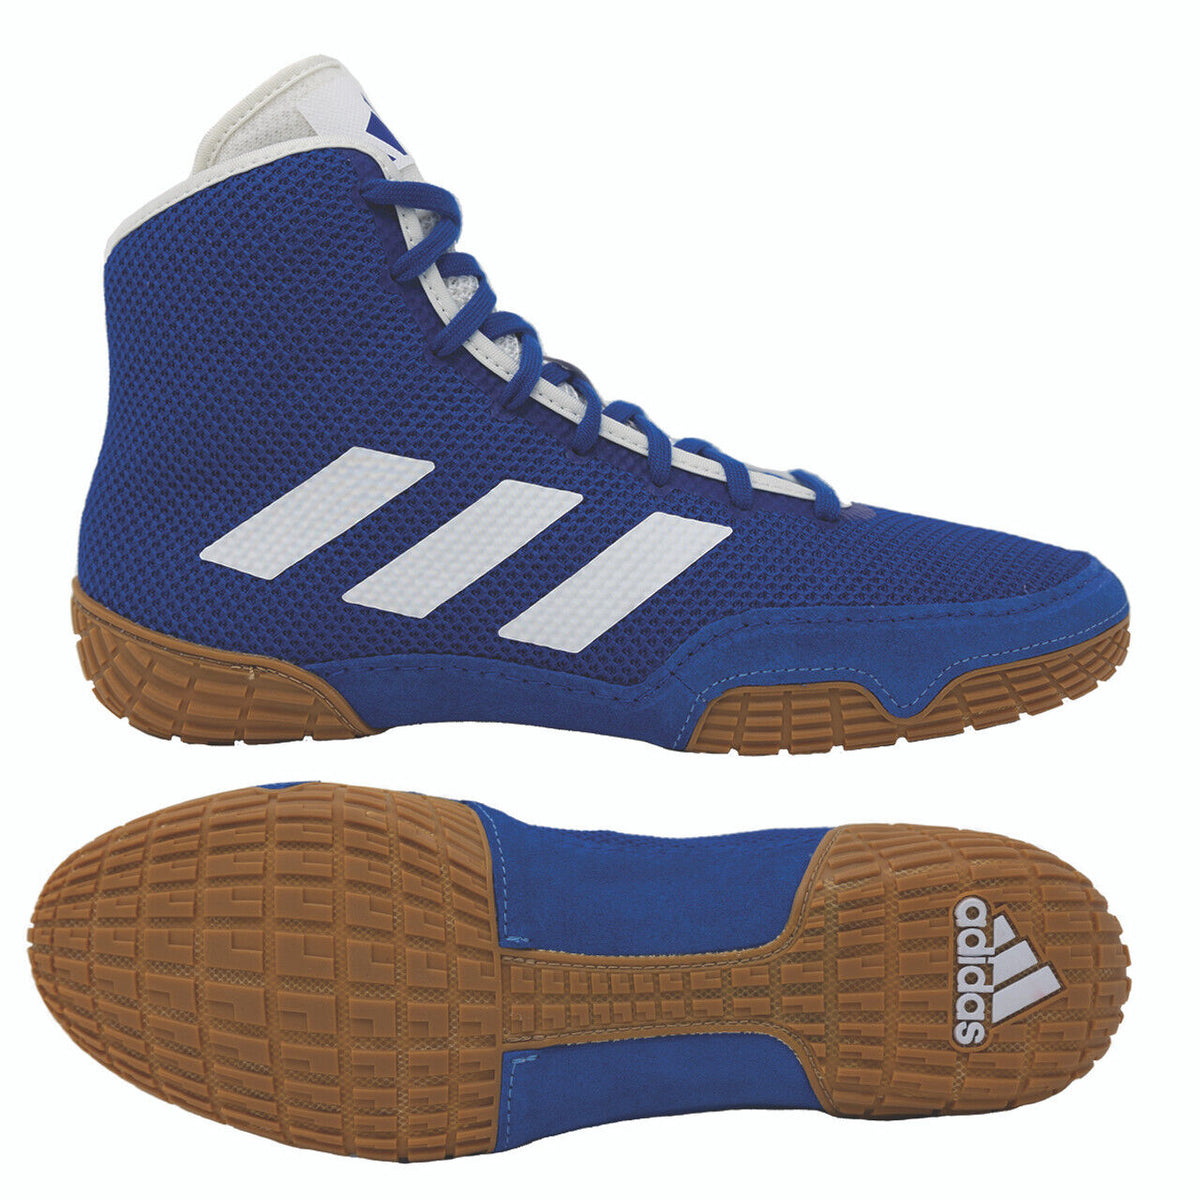 Adidas Tech-Fall wrestlingsko i farven blå. Nu til den bedste pris hos Phantom Athletics . Adidas wrestling sko er blandt de mest eftertragtede sko blandt wrestlere verden over, da de tilbyder overlegen kvalitet kombineret med ultimativ komfort. Den robuste sål giver trækkraft på wrestlingmåtten. 